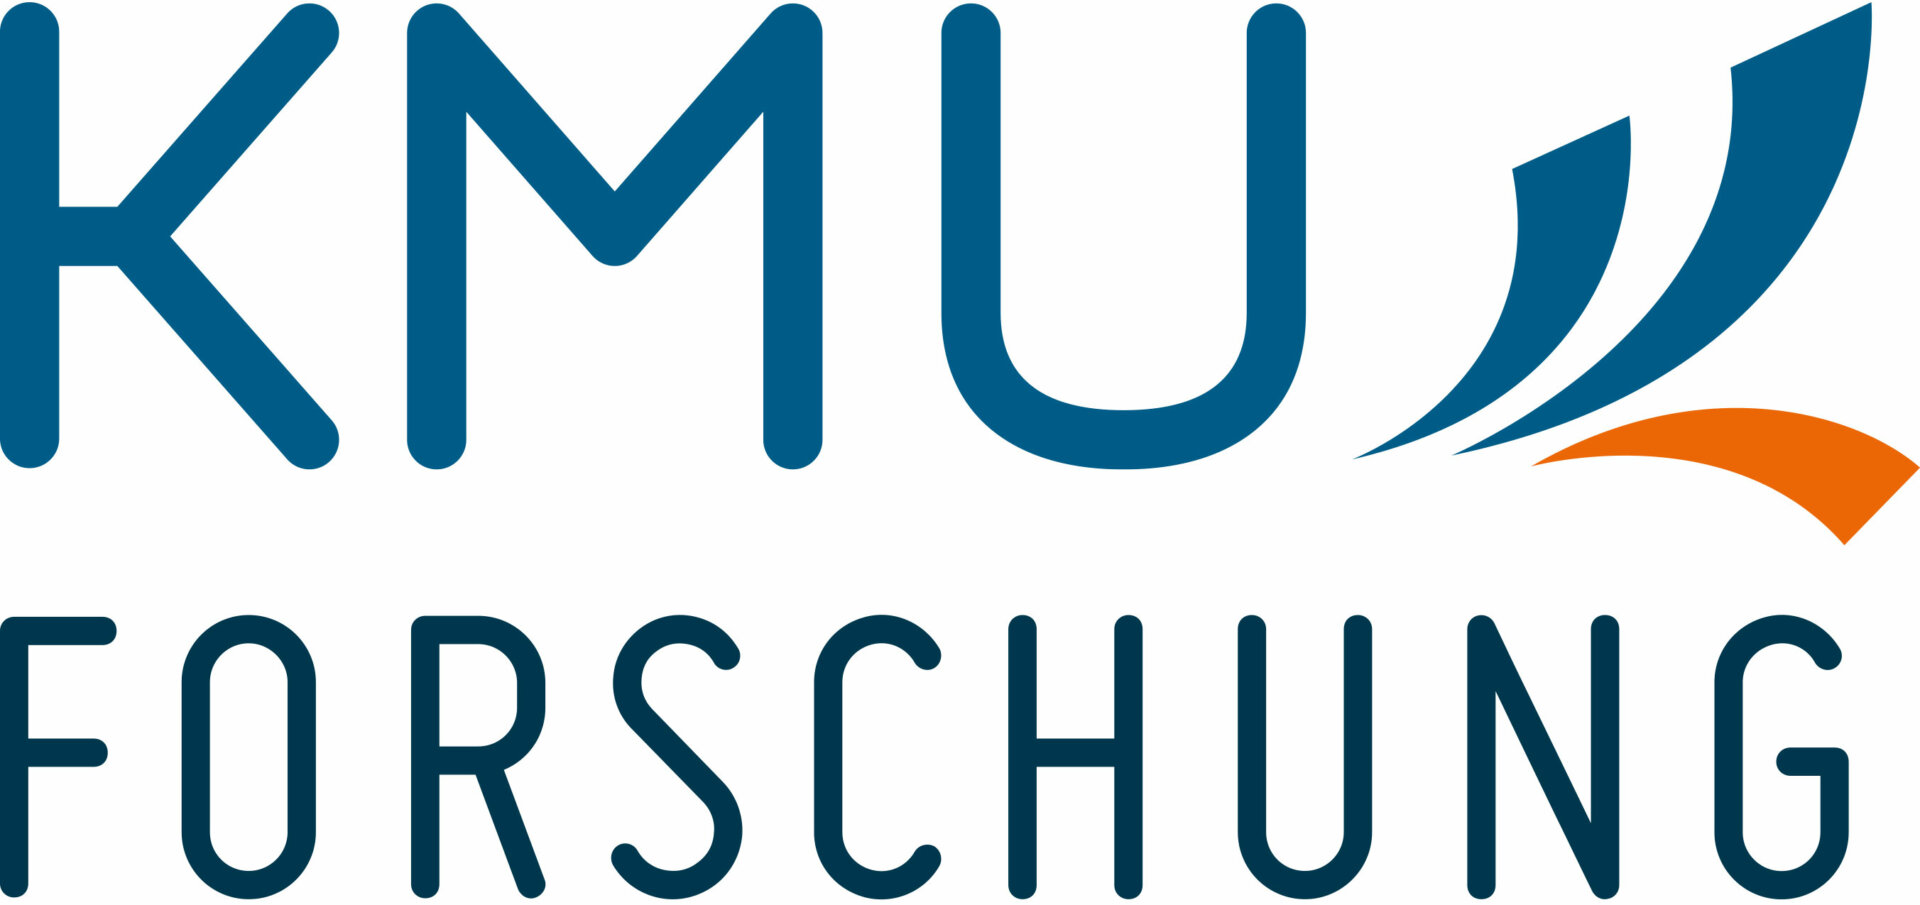 KMU Forschung Austria